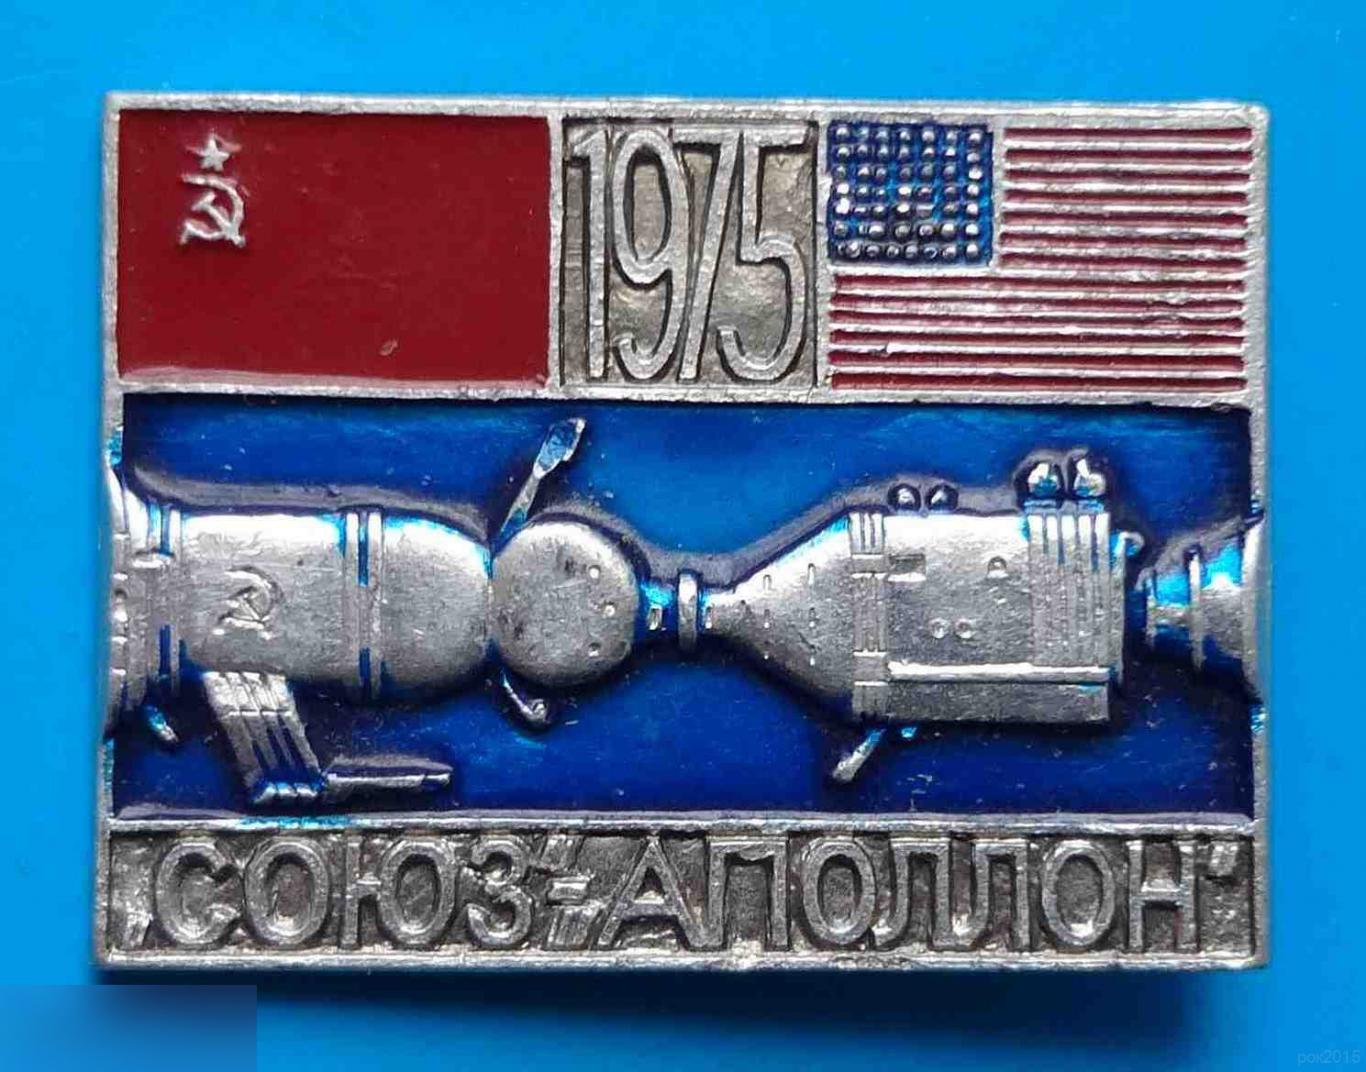 Союз-Аполлон 1975 СССР США космос